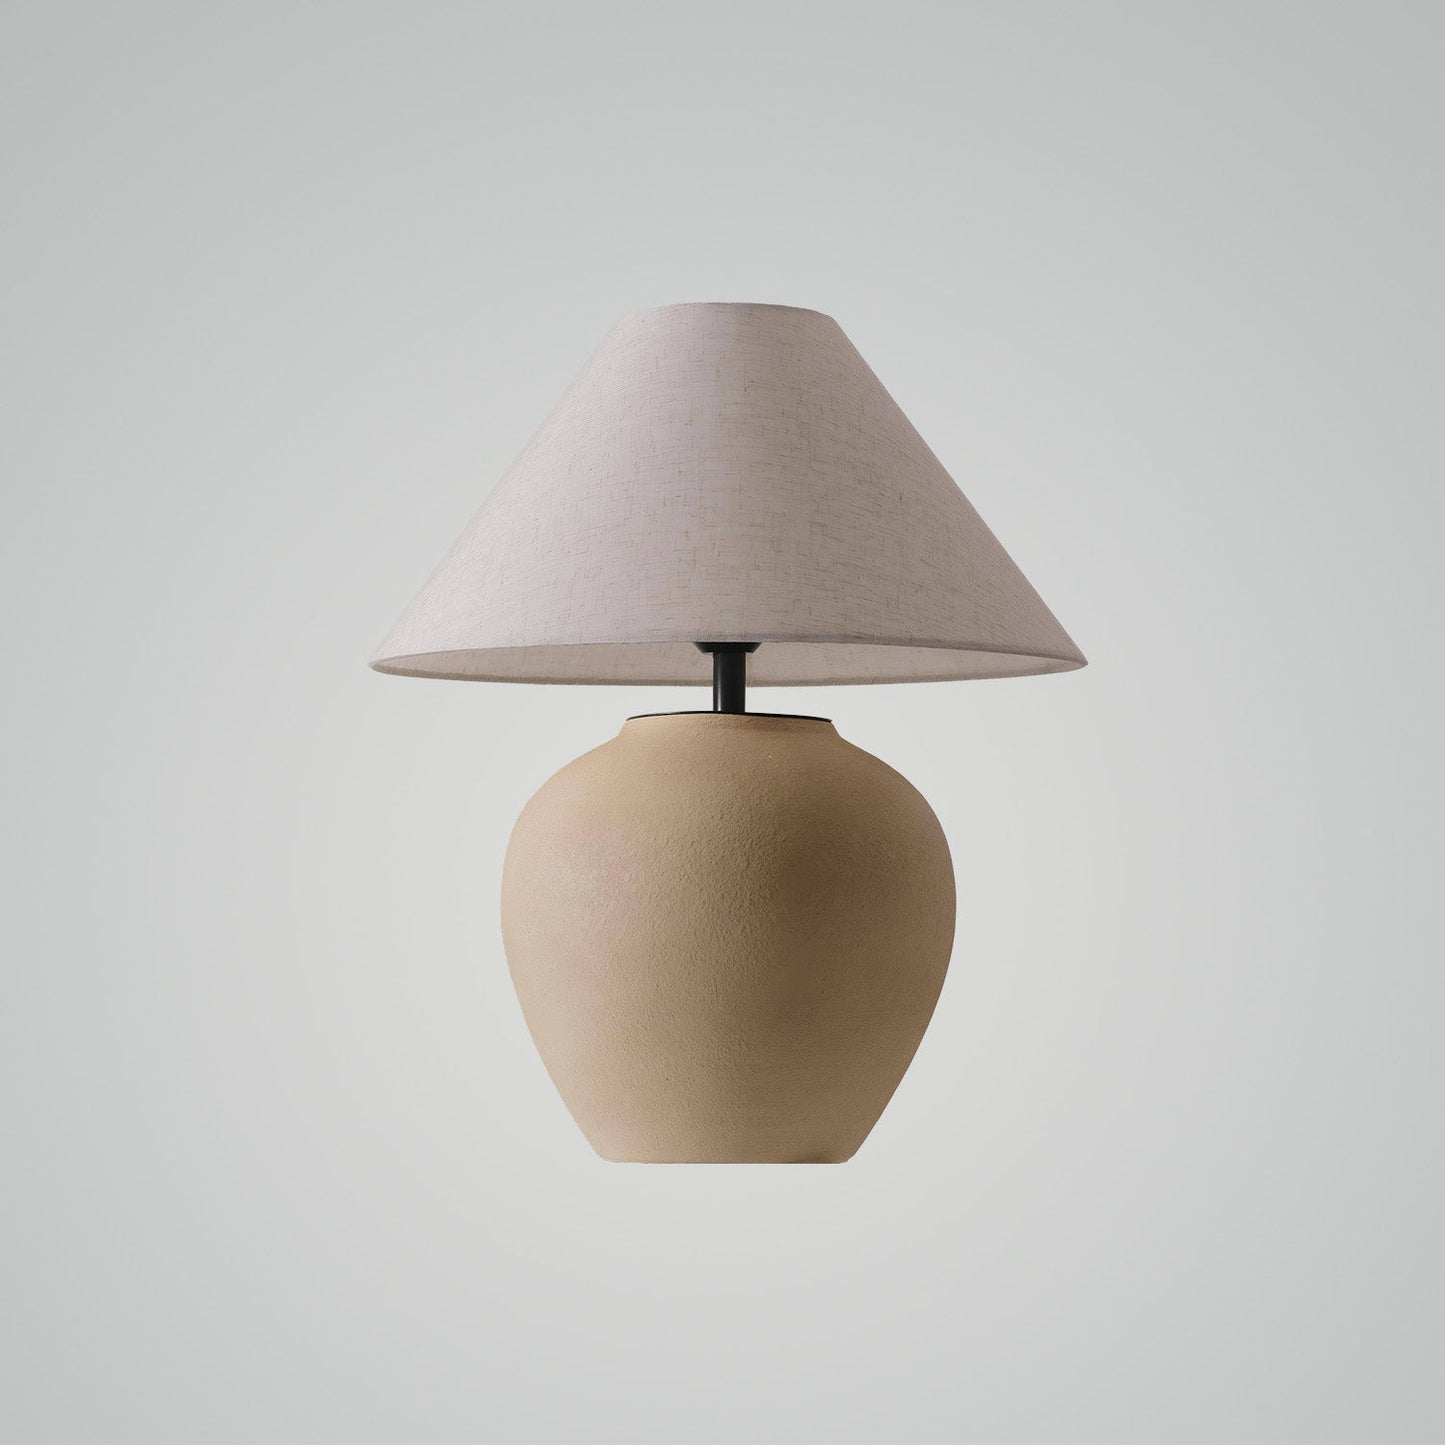 WabiSabi - Earthen Hue Table Lamp